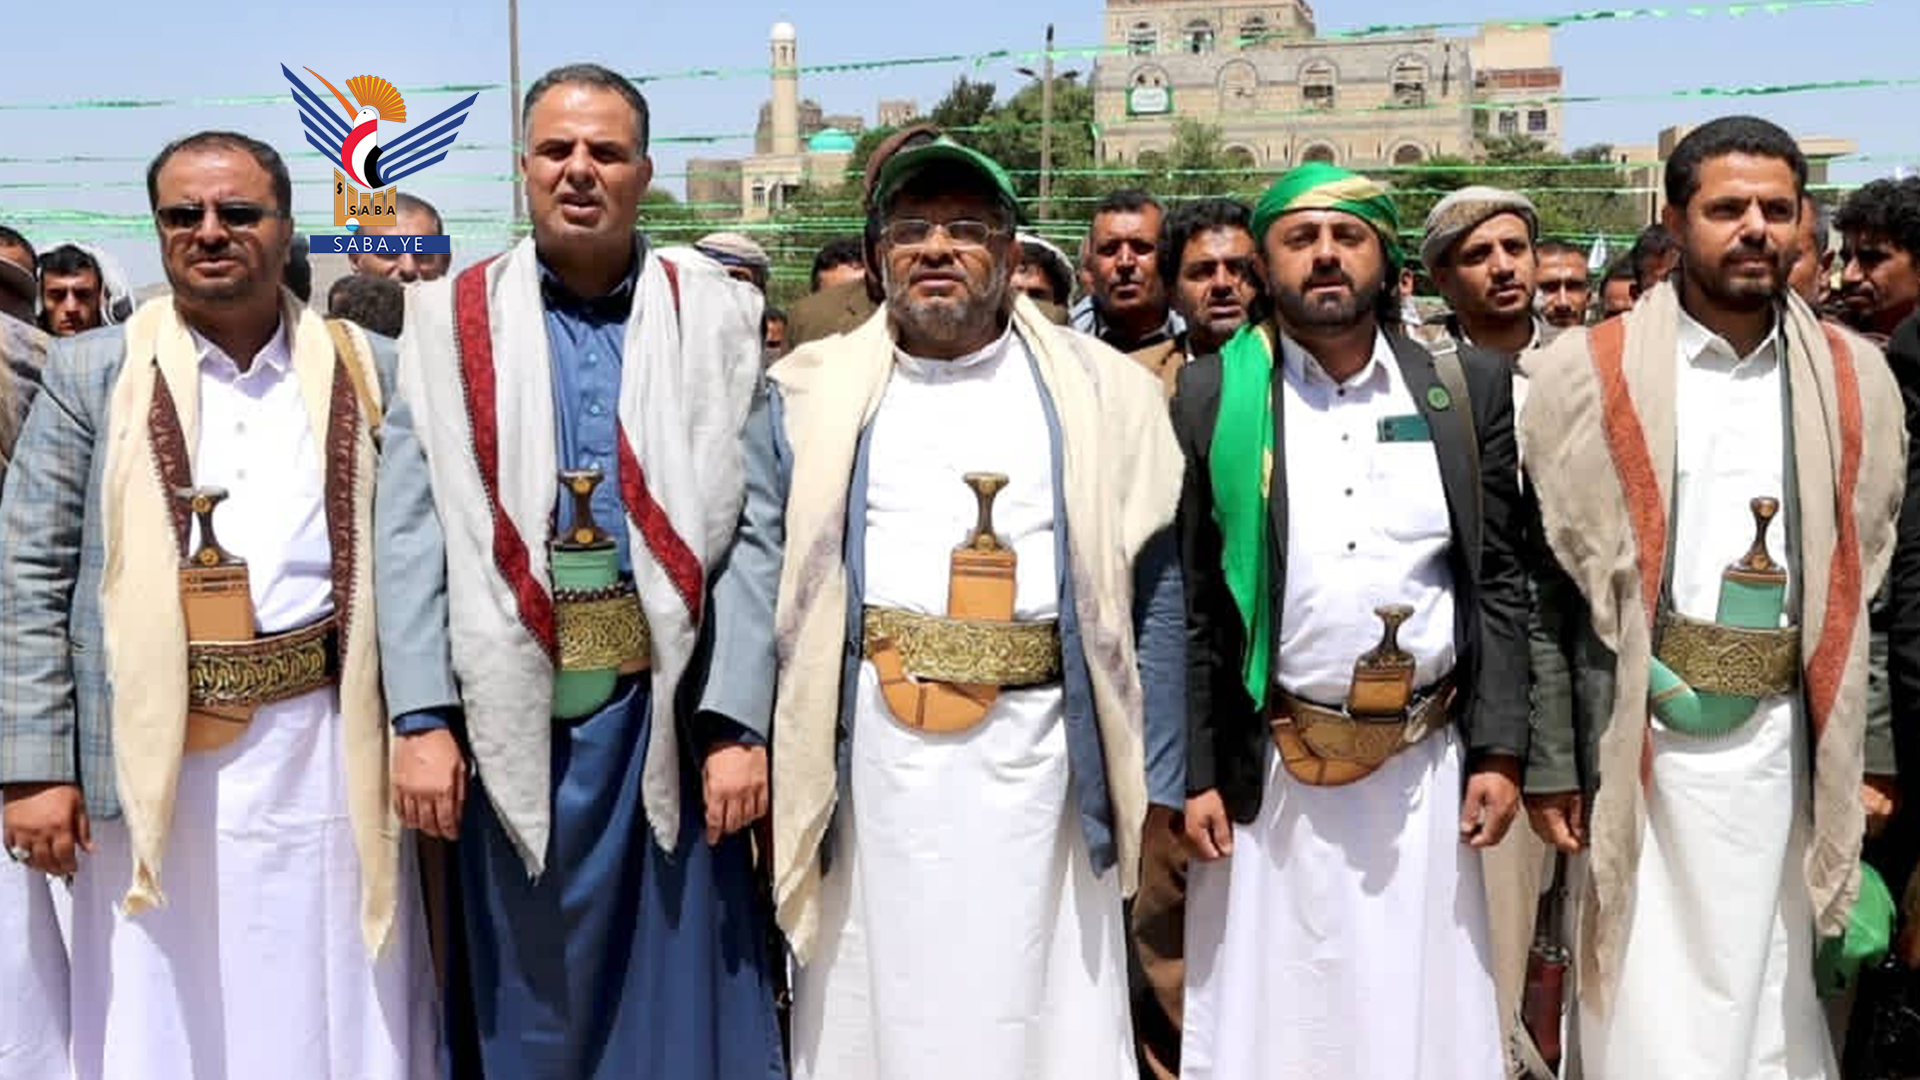 Mohammad Al-Houthi ruft Menschen in Hadschah auf, sich umfassend an zentralen Veranstaltung zum Geburtstag des Propheten zu beteiligen